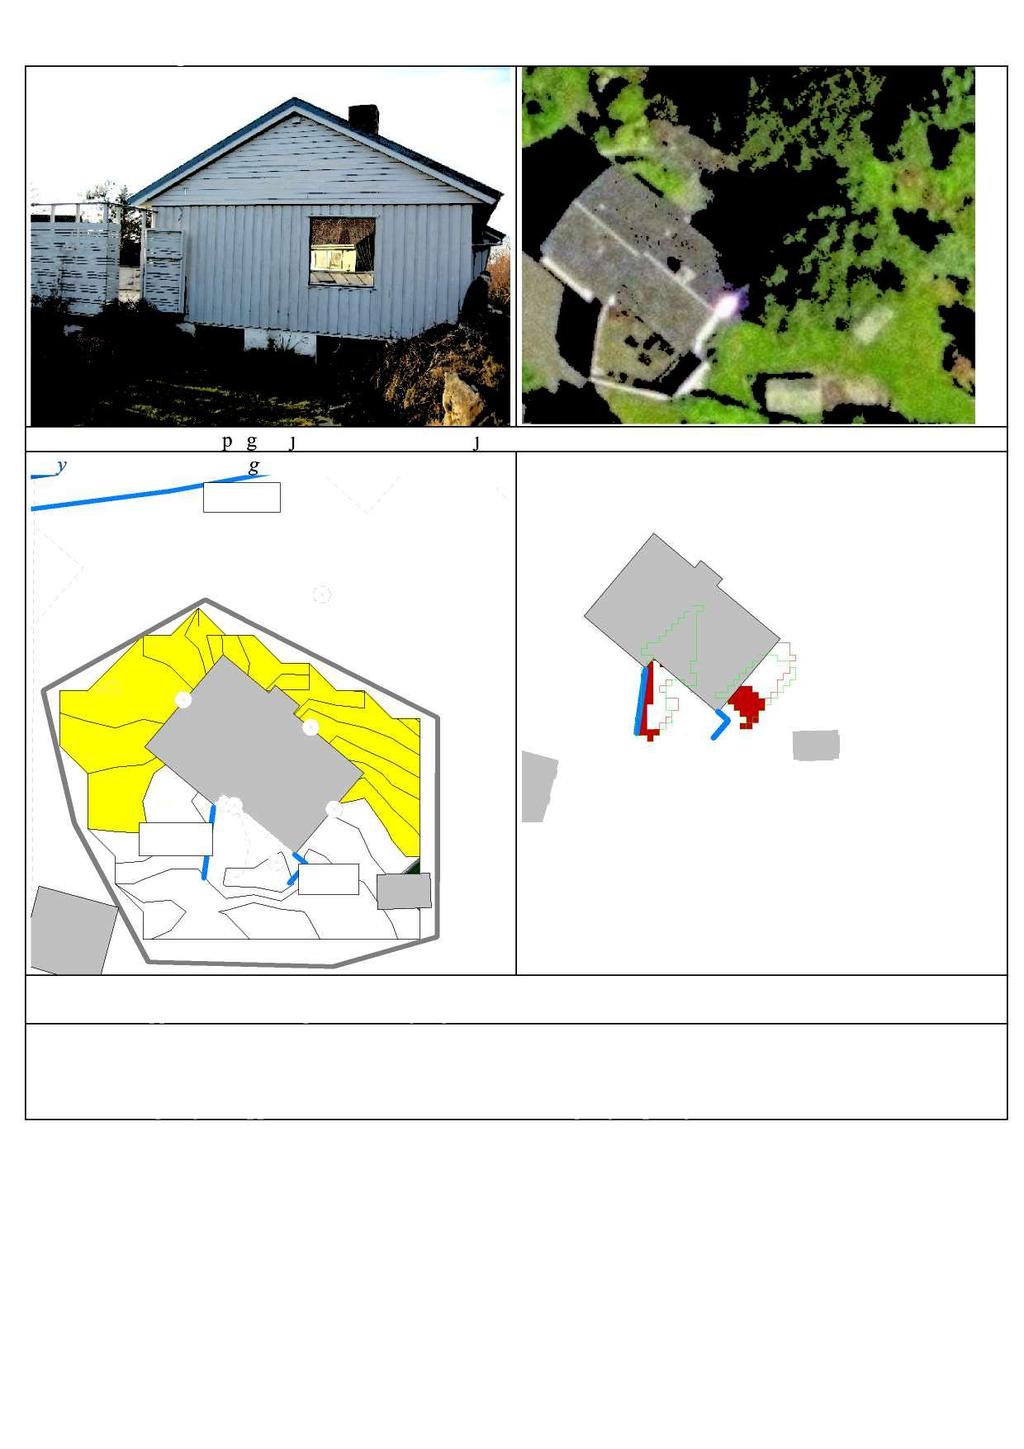 Adresse : Kornbergkroken 07 Generelt : Stor terrasse på garasje m o t sør. Glissent skjerm et. Støysoner: 1,5 m beregningshøyde 2 m 2.5 m 2.